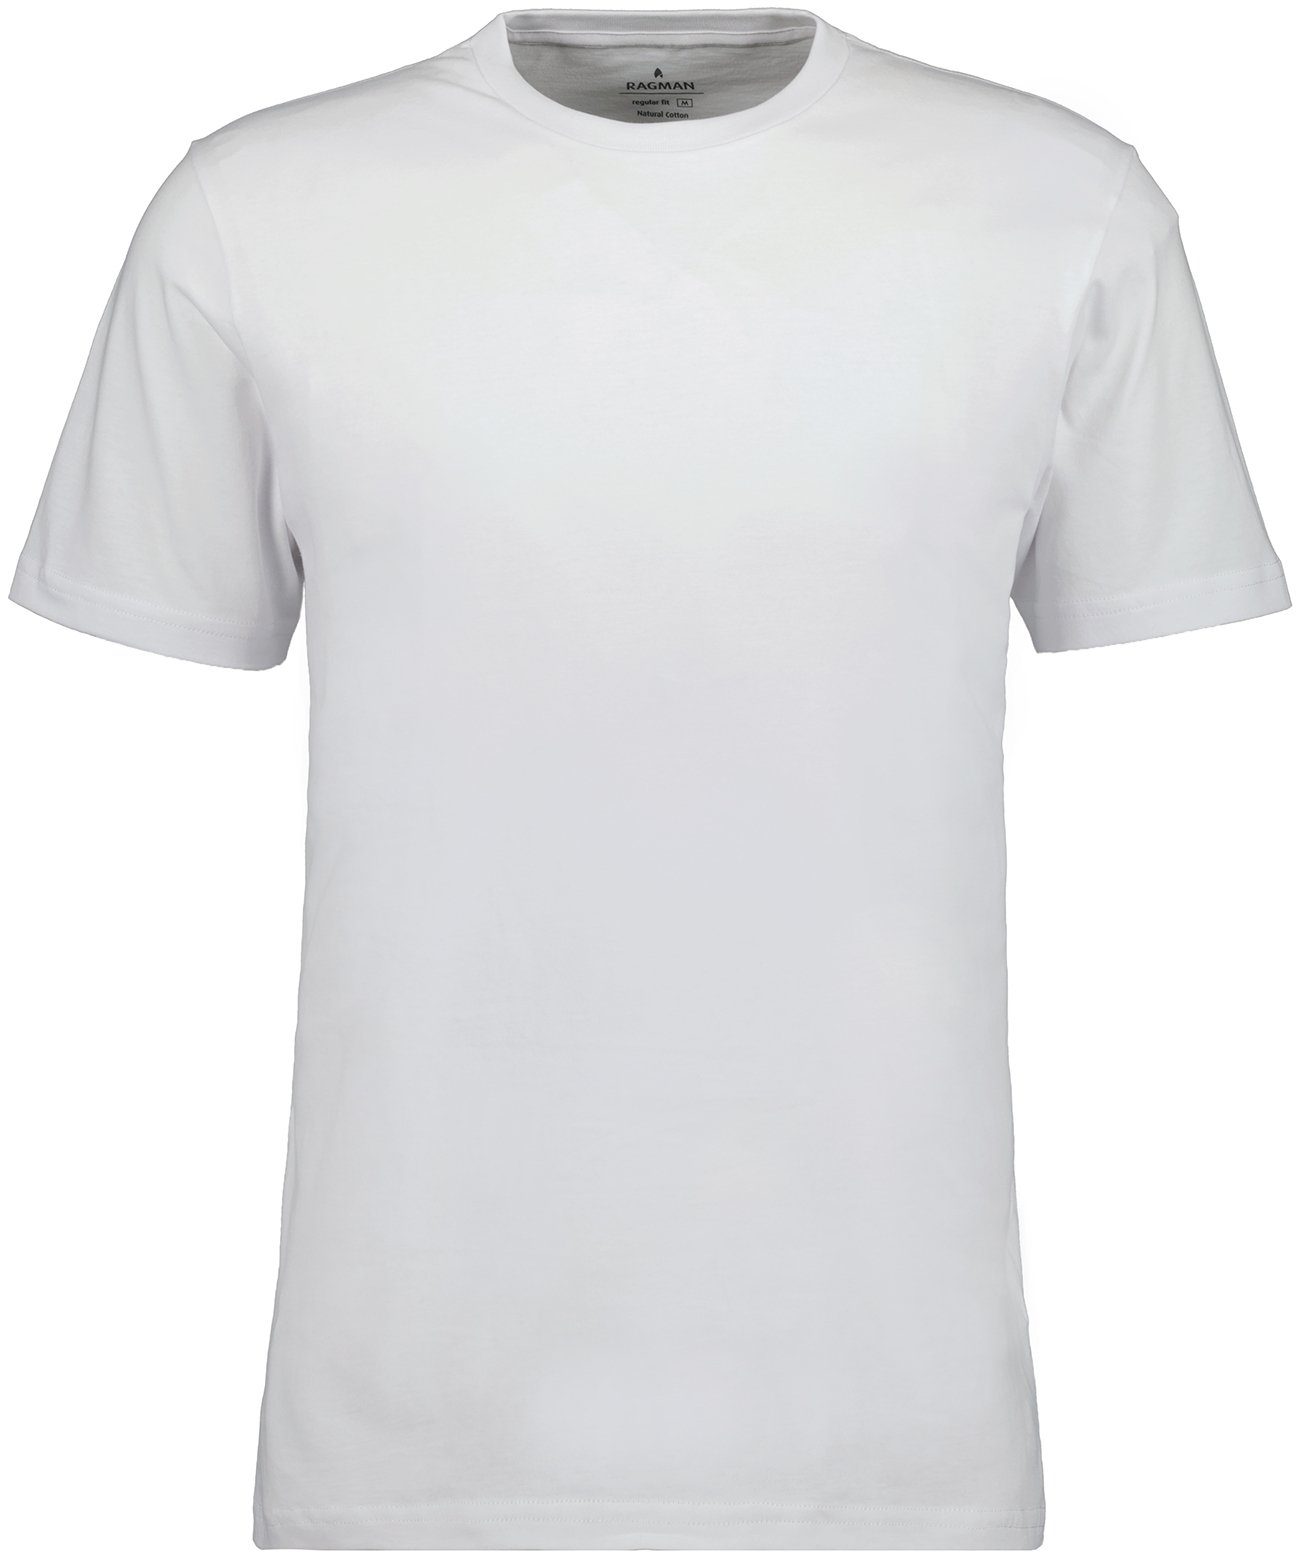 T-Shirt RAGMAN Weiss